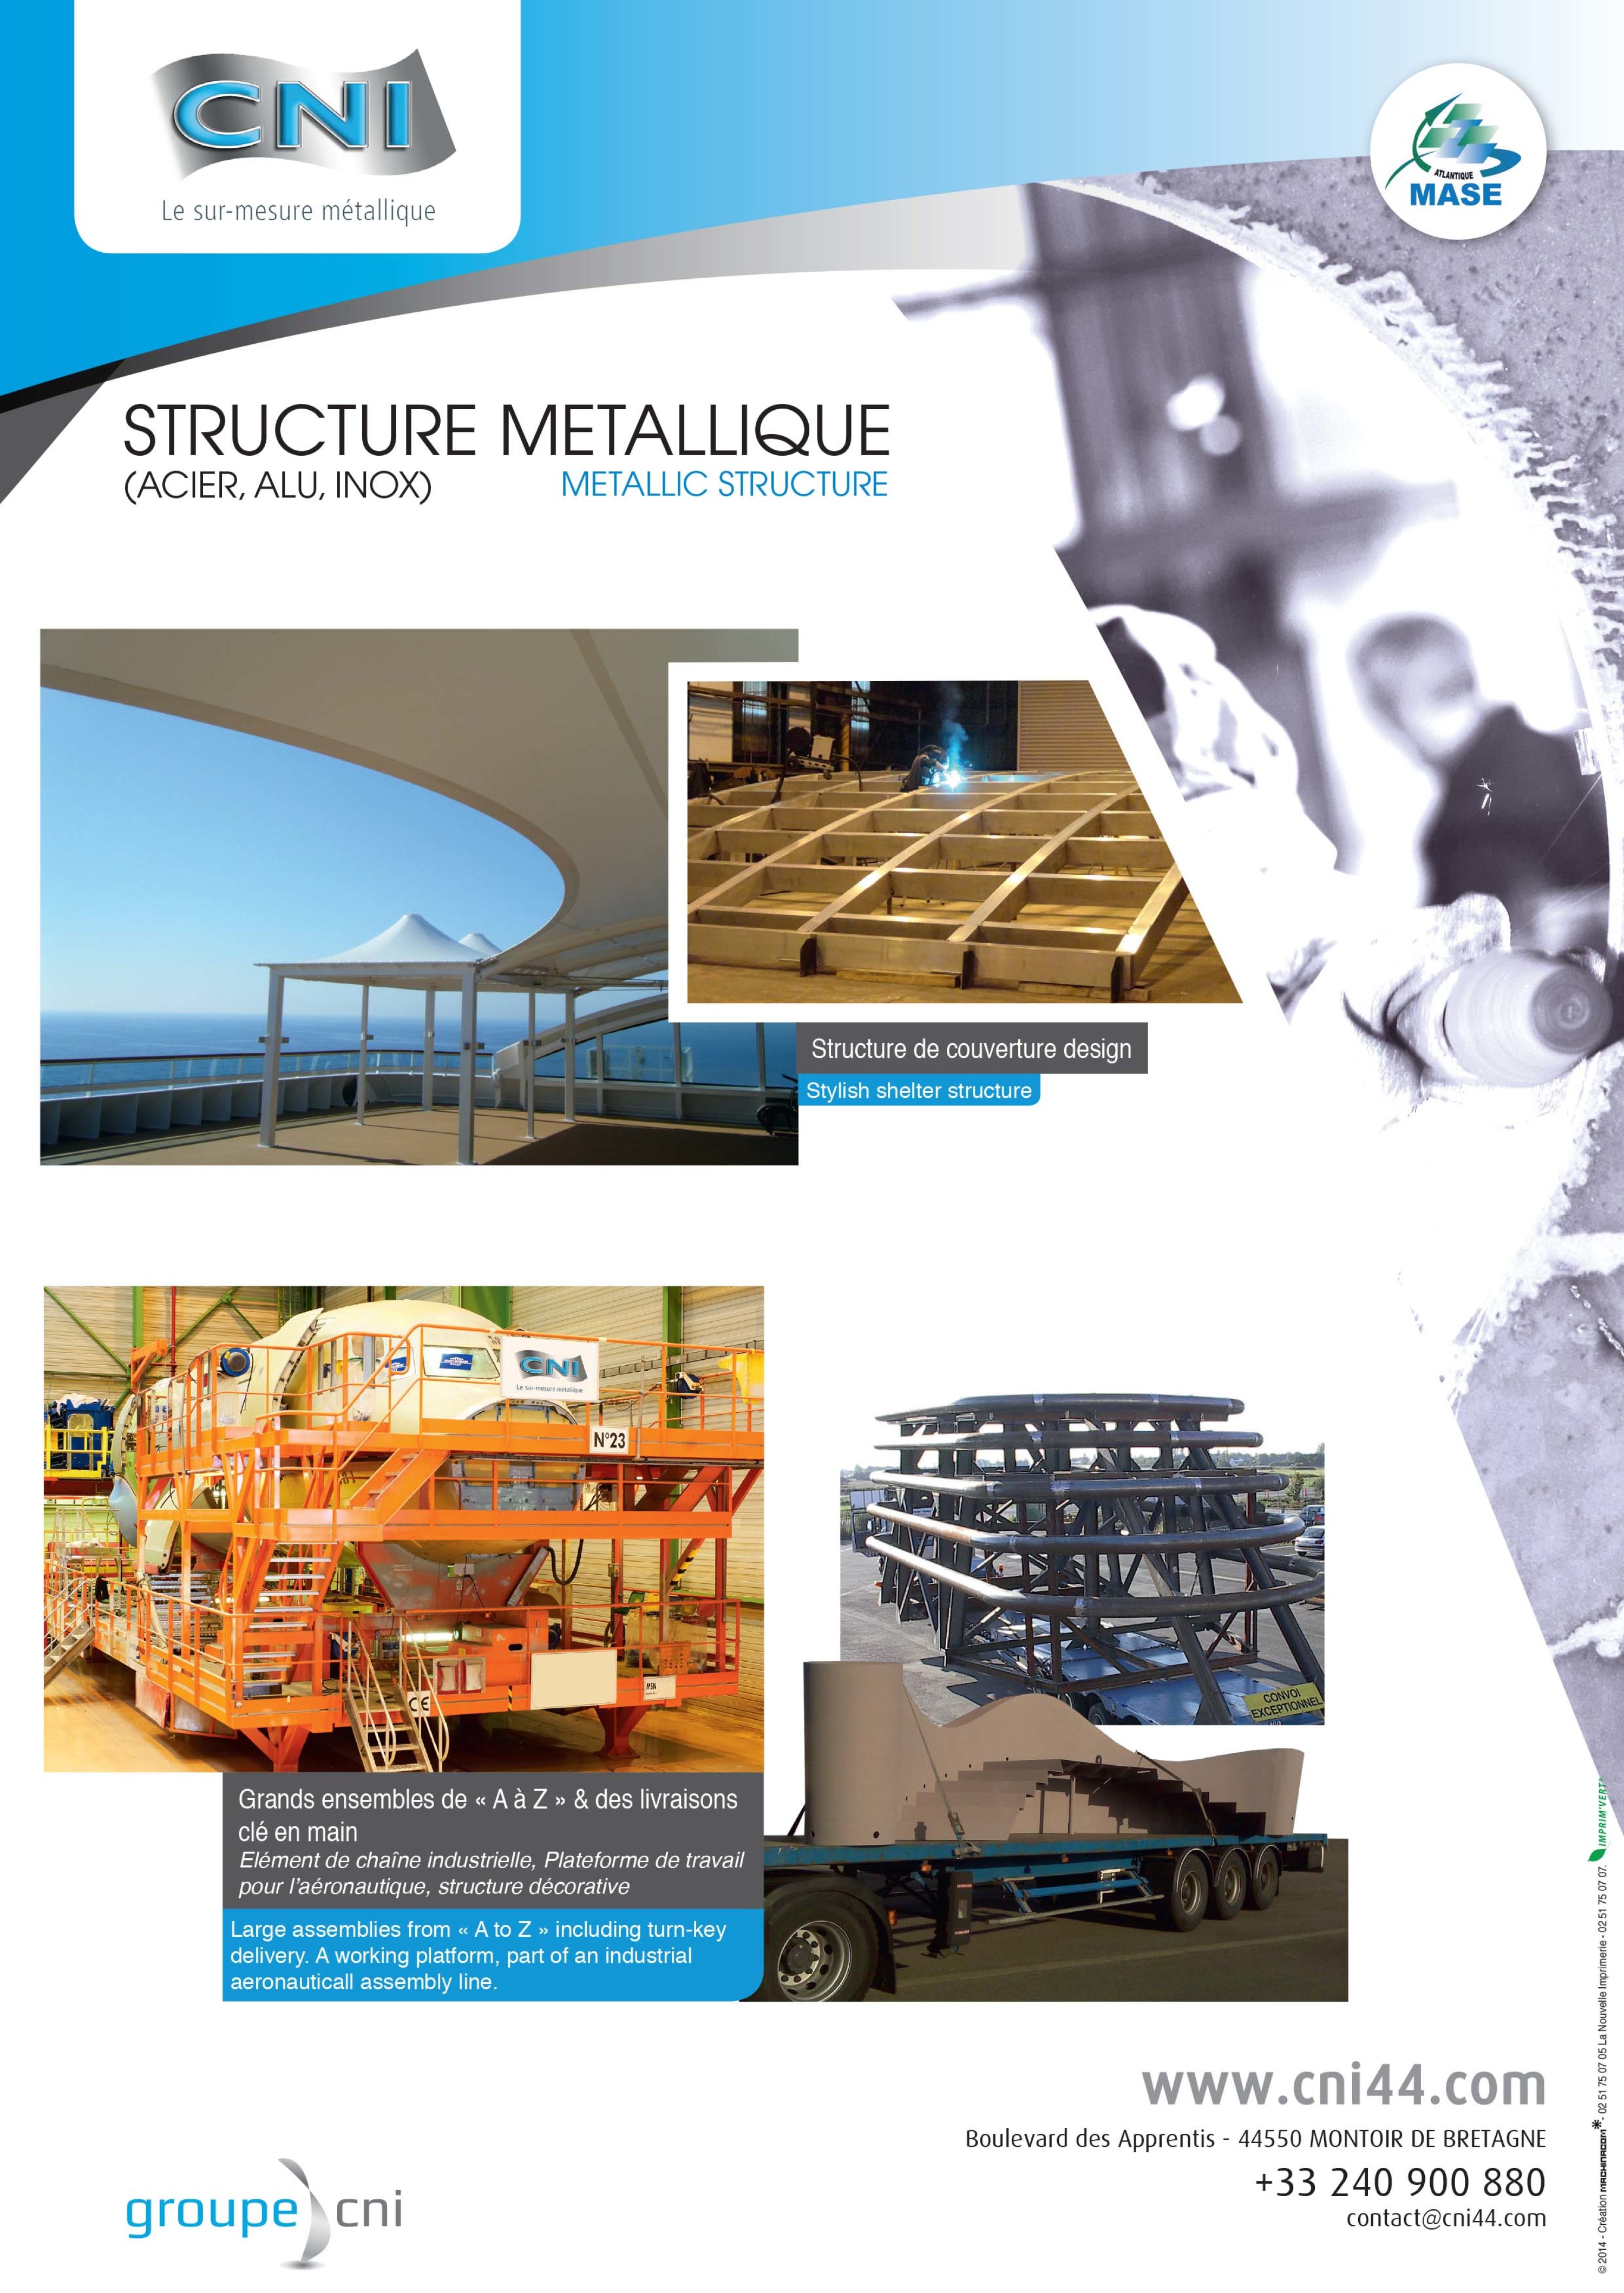 Constructii metalice si parti componente ale structurilor